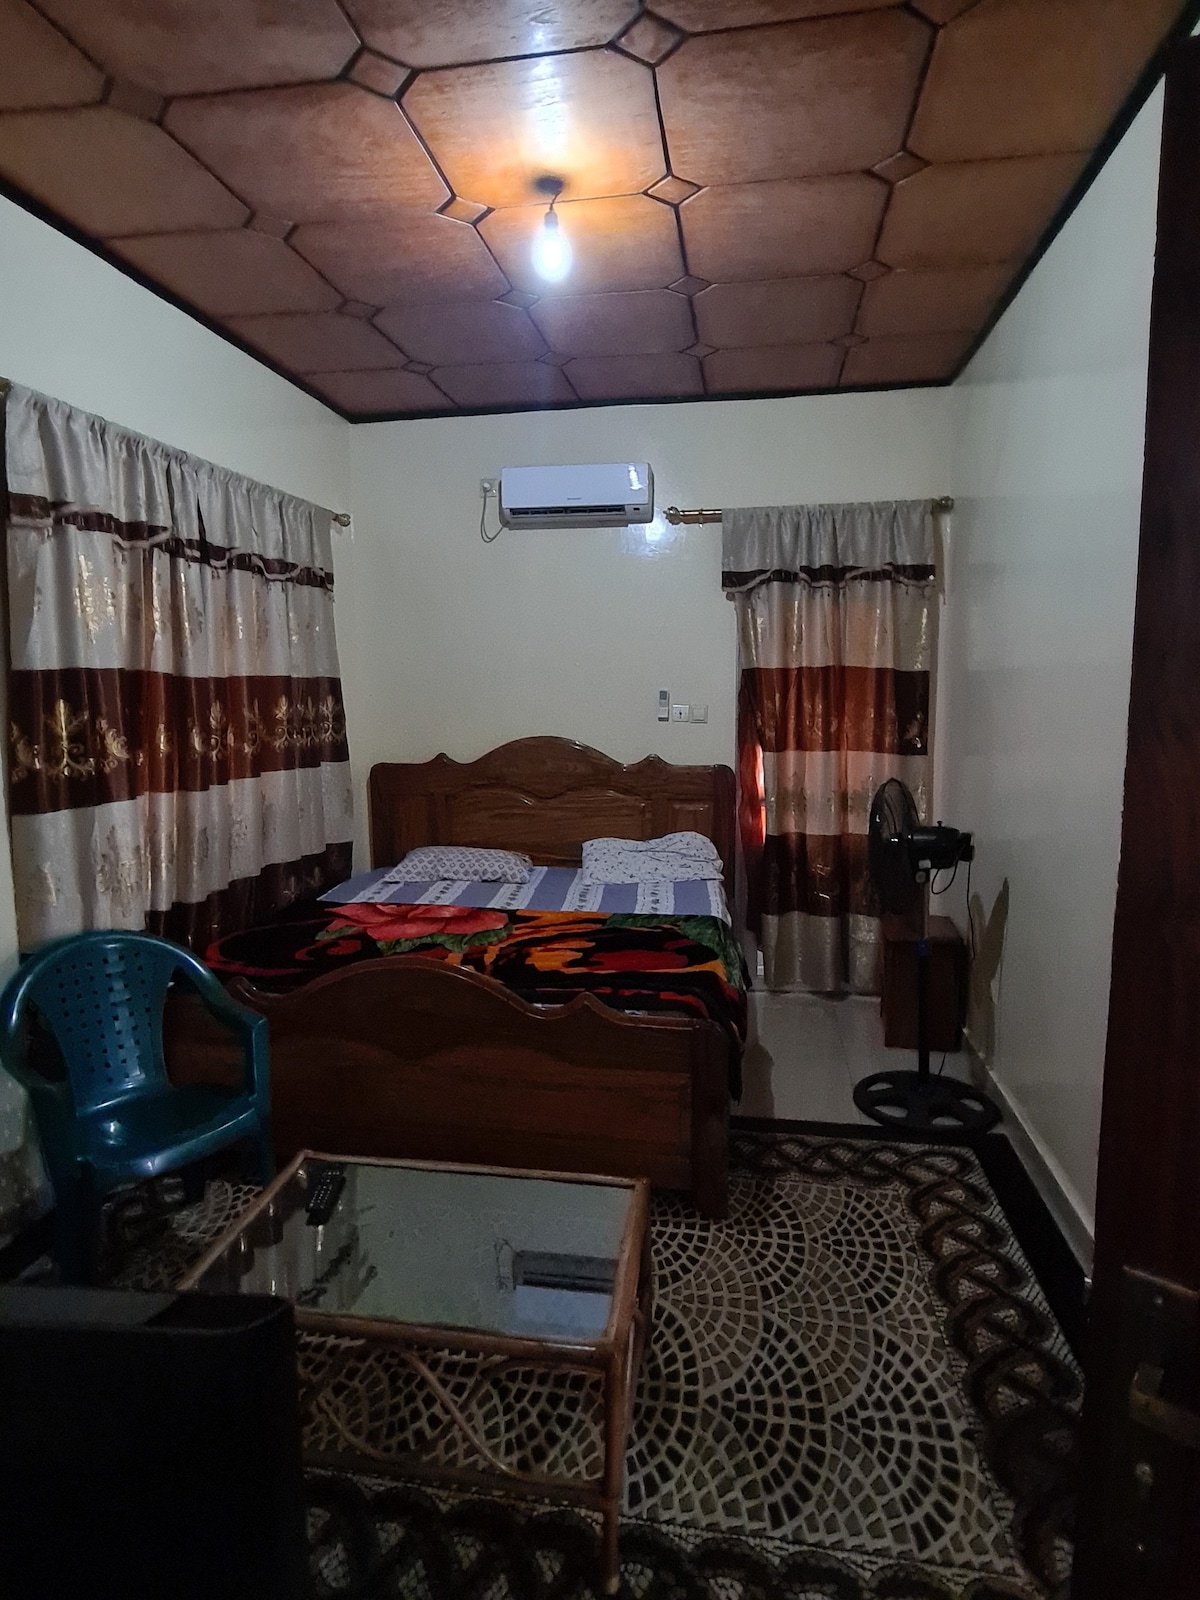 C.R空调卧室内空调淋浴间Kipé Conakry